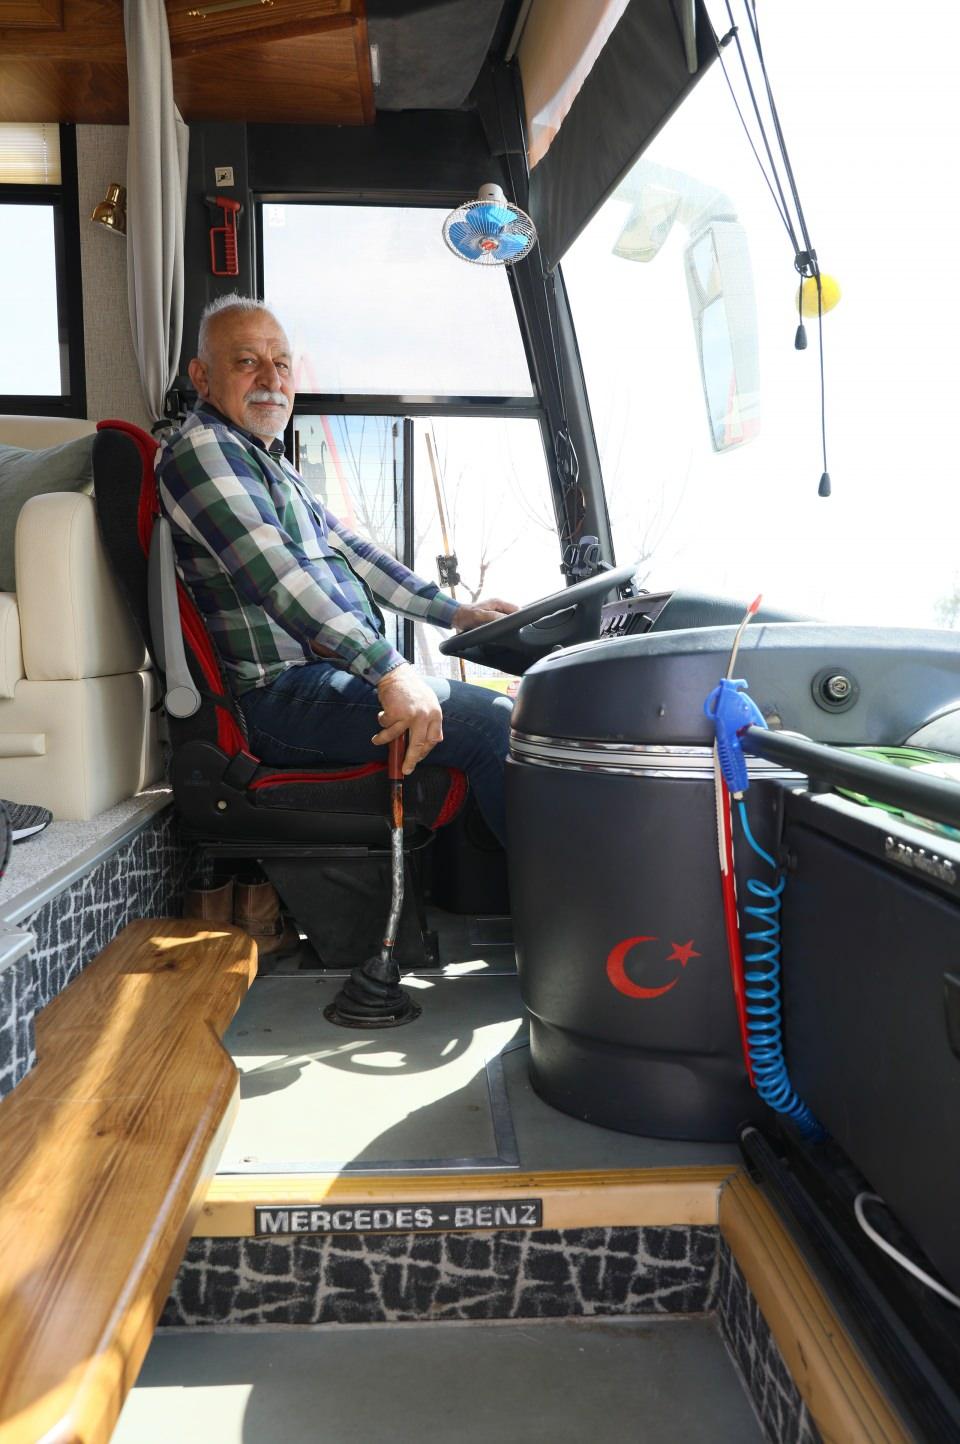 <p>İstanbul'da yaşayan mimar Selçuk Aslan, 10 yıl önce emekli olup Antalya'ya yerleşti. Çalıştığı süre boyunca karavan yaşantısını hayal eden Aslan, emekli olunca karavan arayışına girişti. İstediği büyüklükte, zevkine göre döşenmiş bir karavan bulamayan Aslan, kendi karavanını tasarlamaya karar verdi. Yıllarca yolcu taşıyan bir otobüsü satın alan Selçuk Aslan, içini tamamen kendisi tasarladı.</p>

<p> </p>
